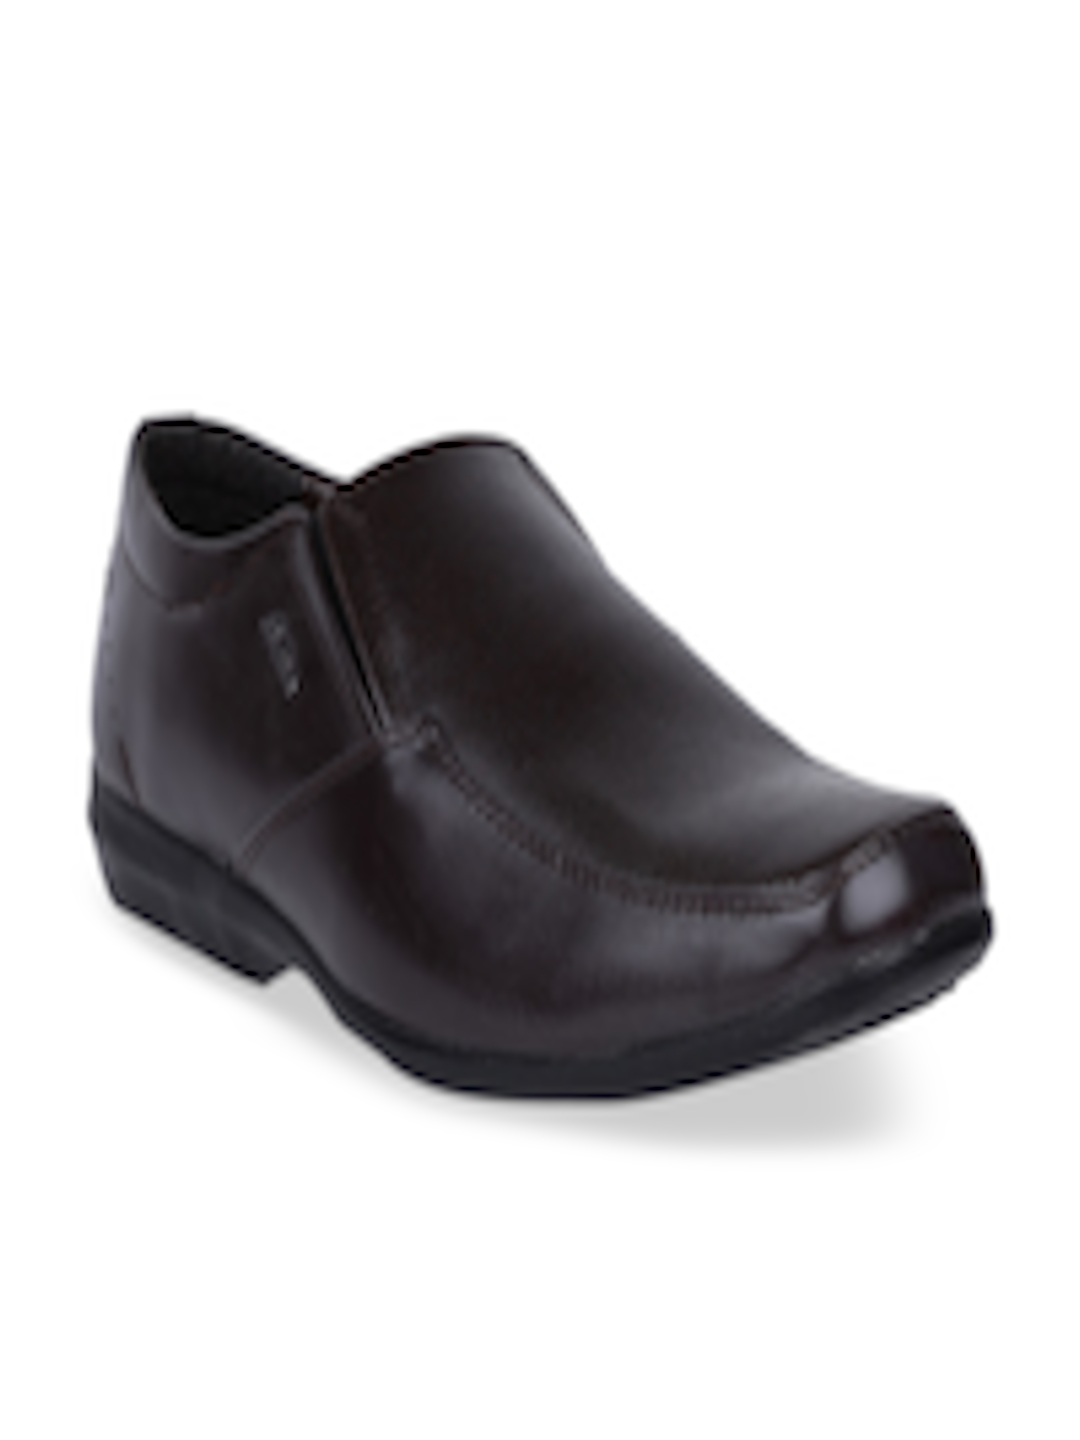 Buy Bata Men Black Solid Formal Slip Ons - Formal Shoes for Men ...